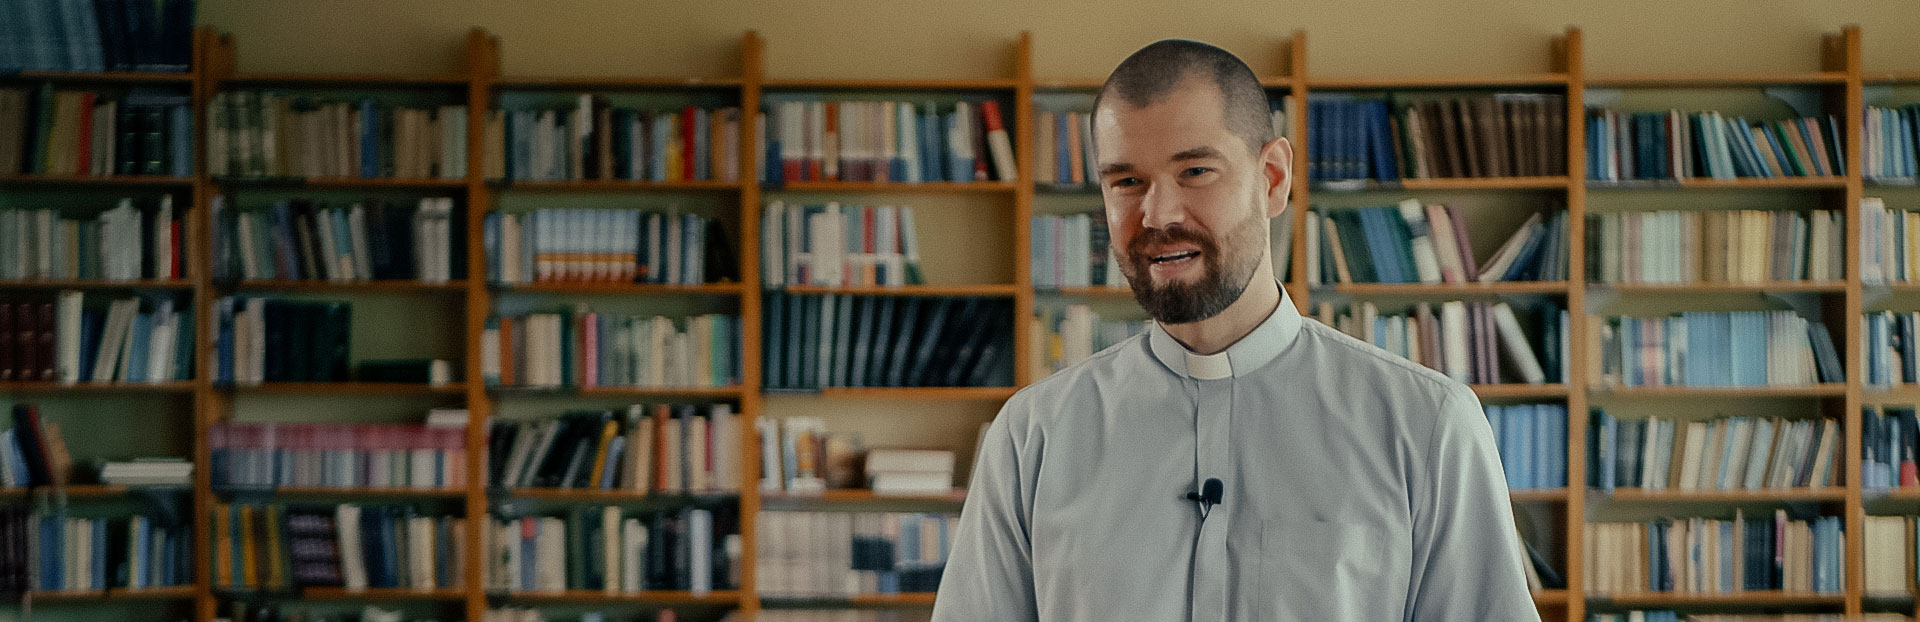 El voto de pobreza de los jesuitas – Una nueva serie de vídeos mensuales